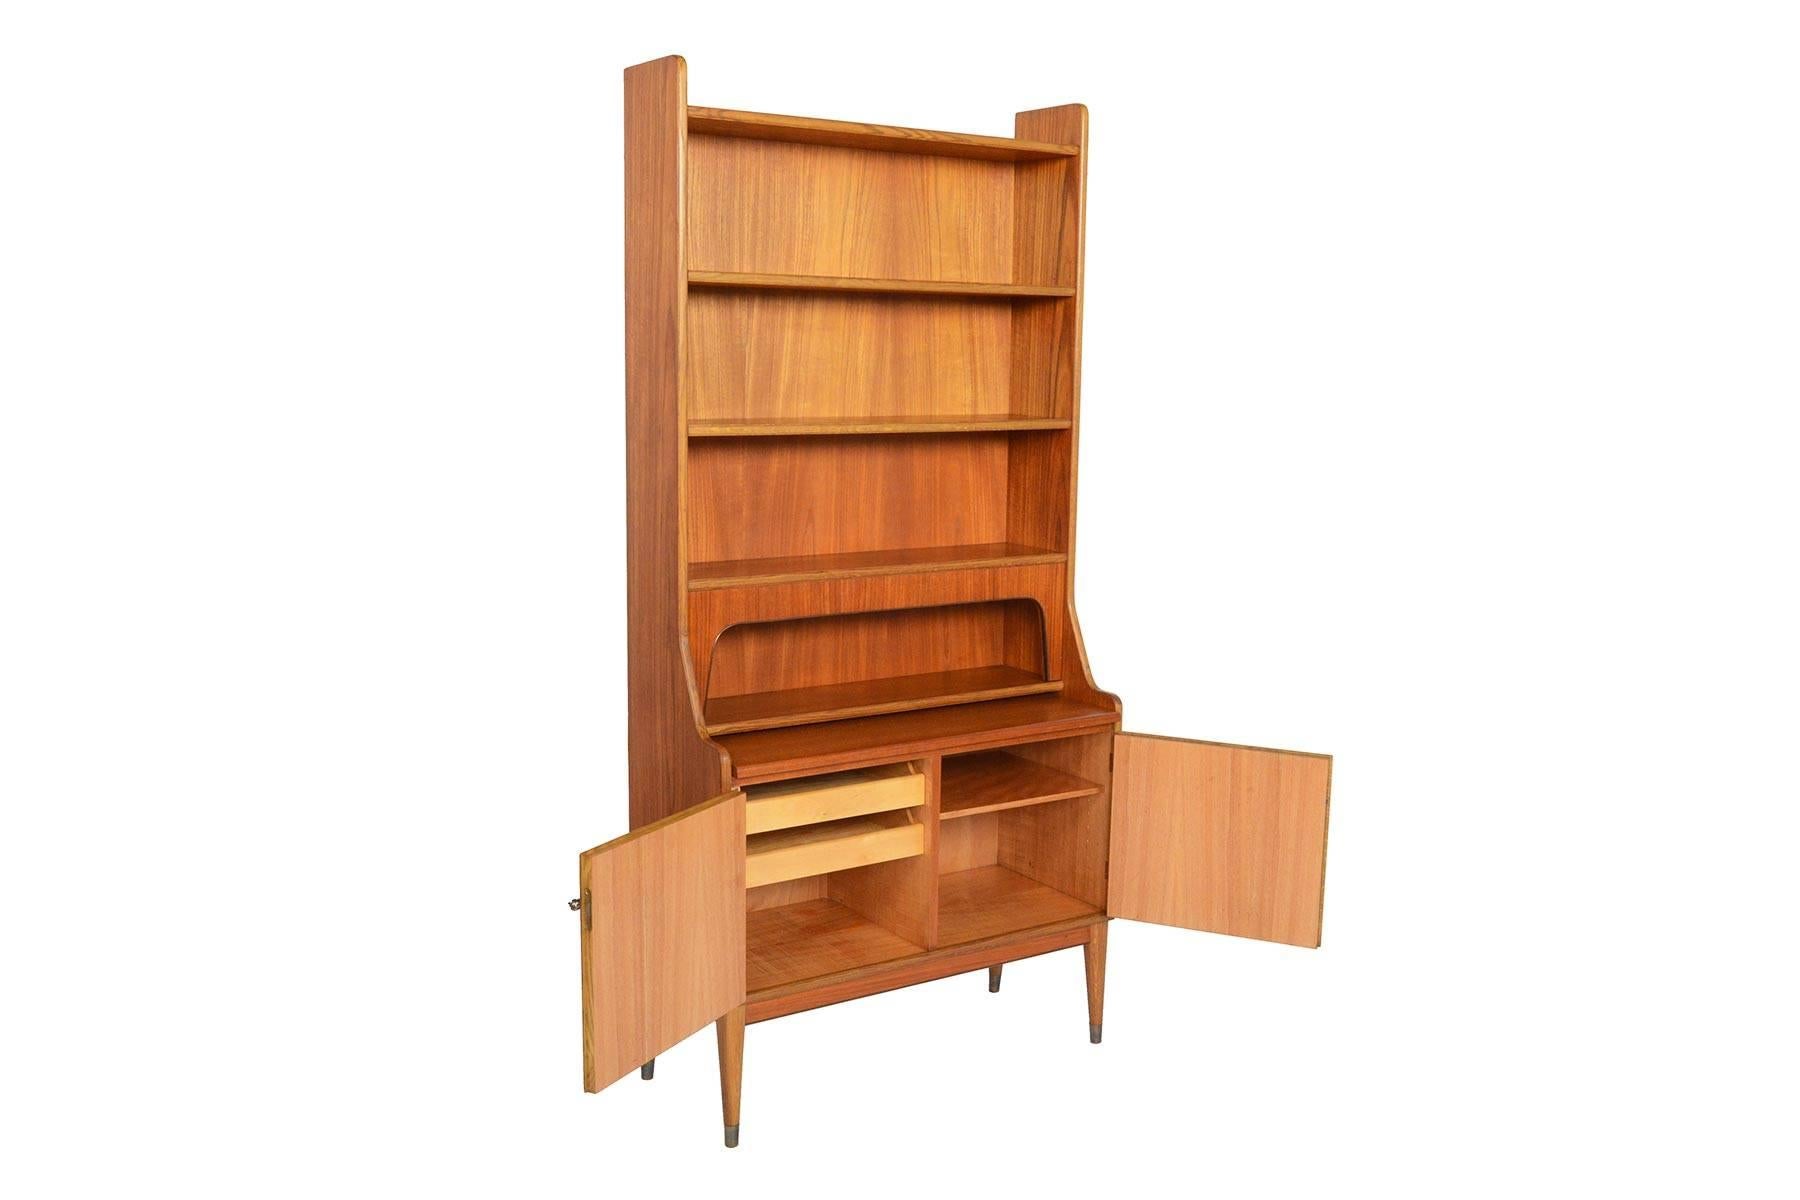 Danish Modern Teak and Oak Bookcase Secretary with Hidden Storage 1